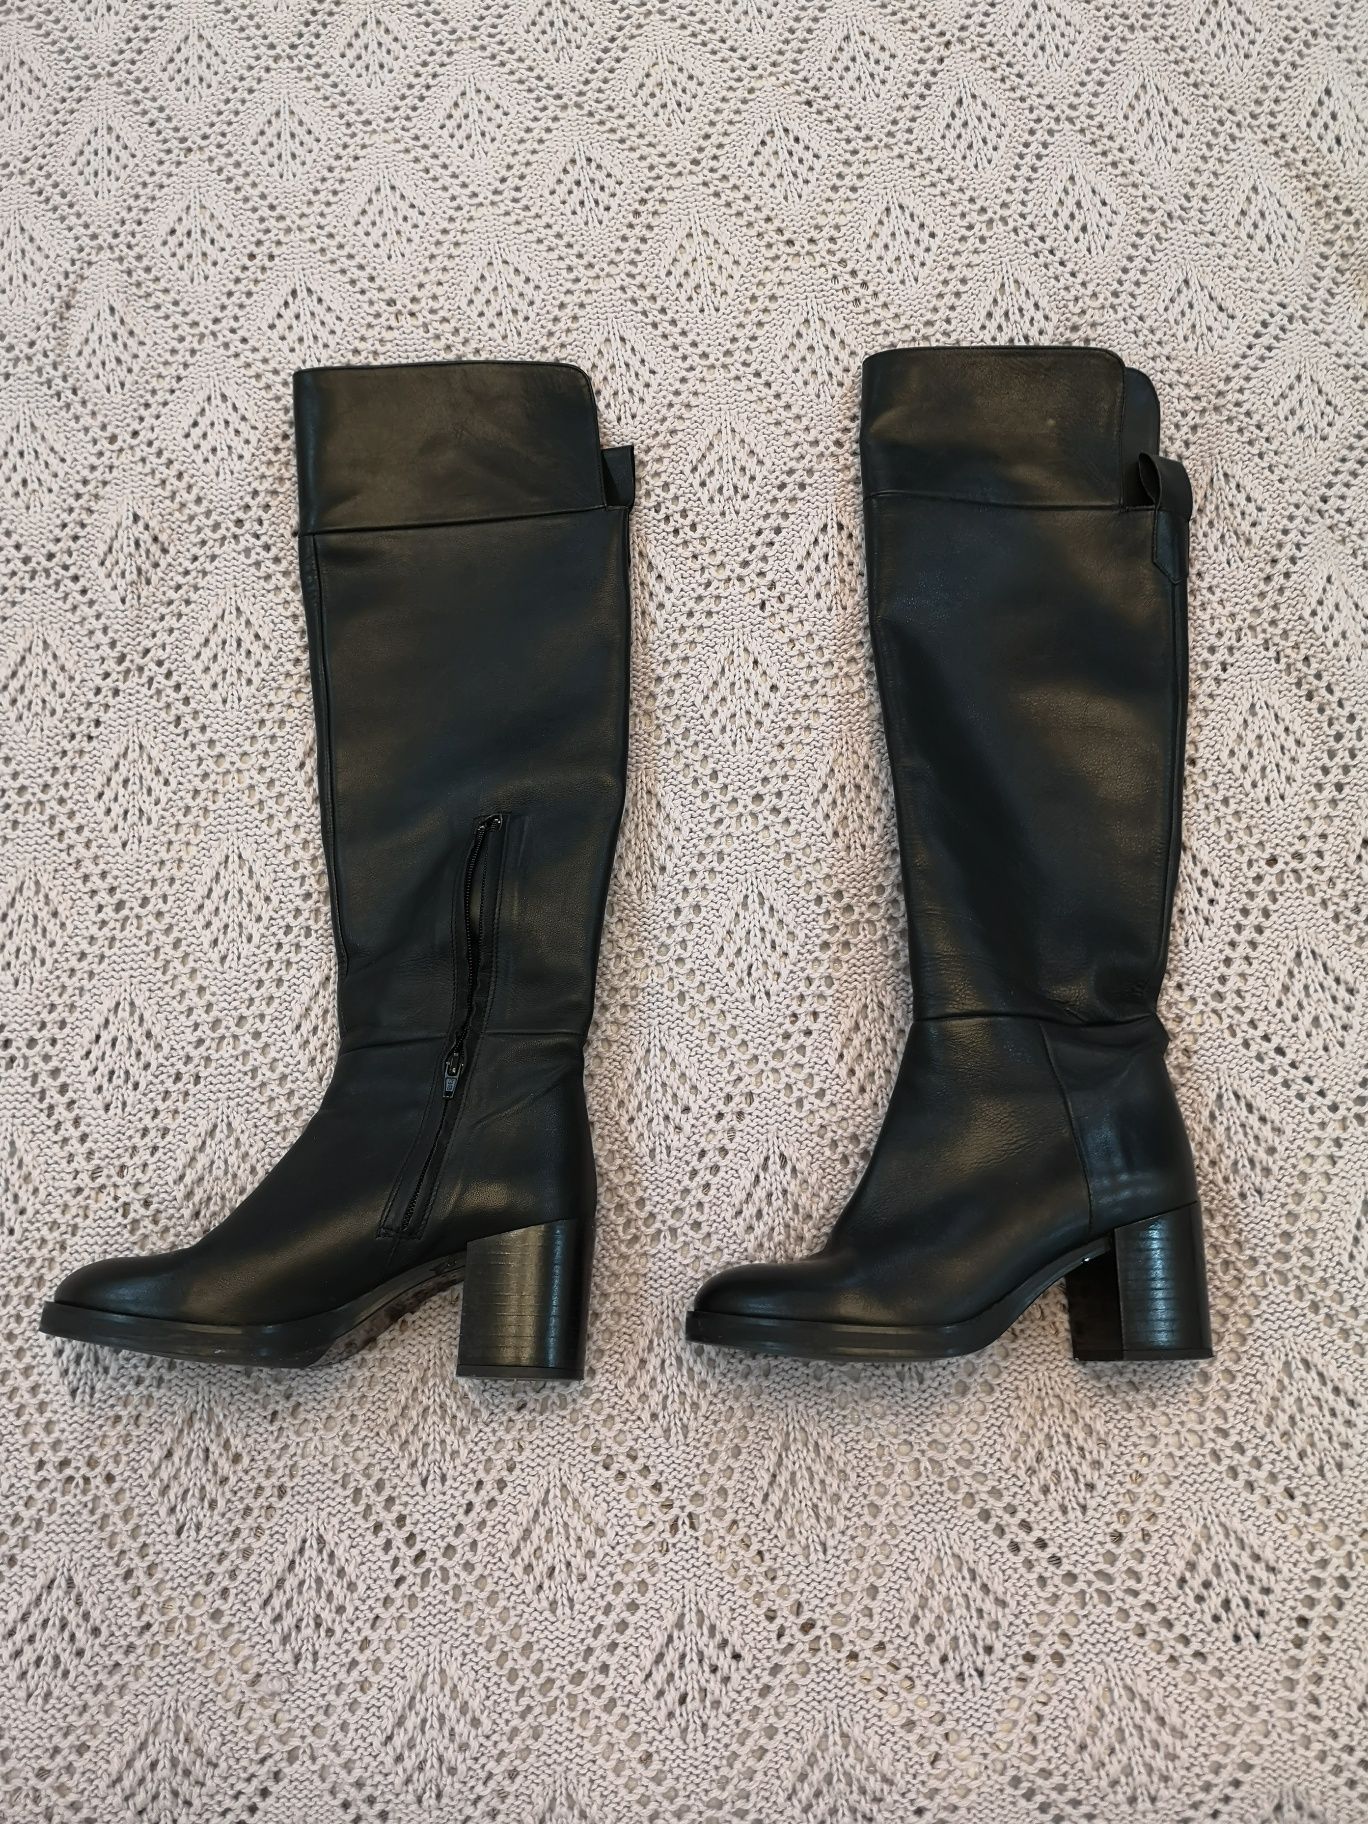 Женские кожаные сапоги ZARA до колена, размер 37-37.5